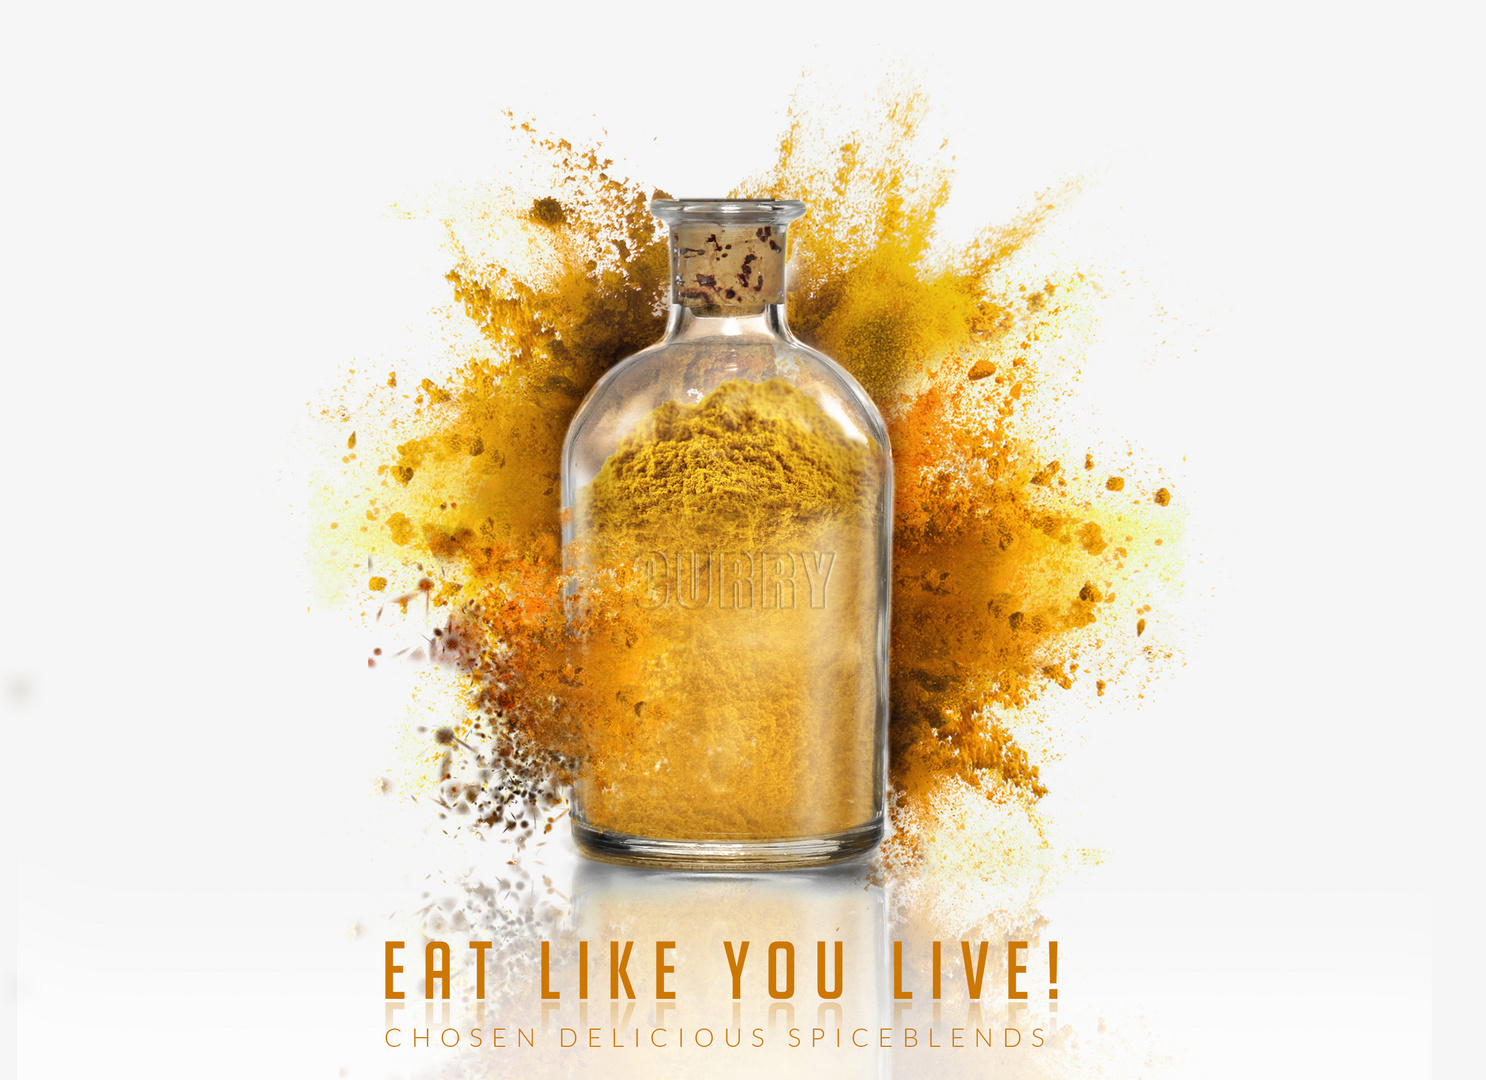 EAT LIKE YOU LIVE!